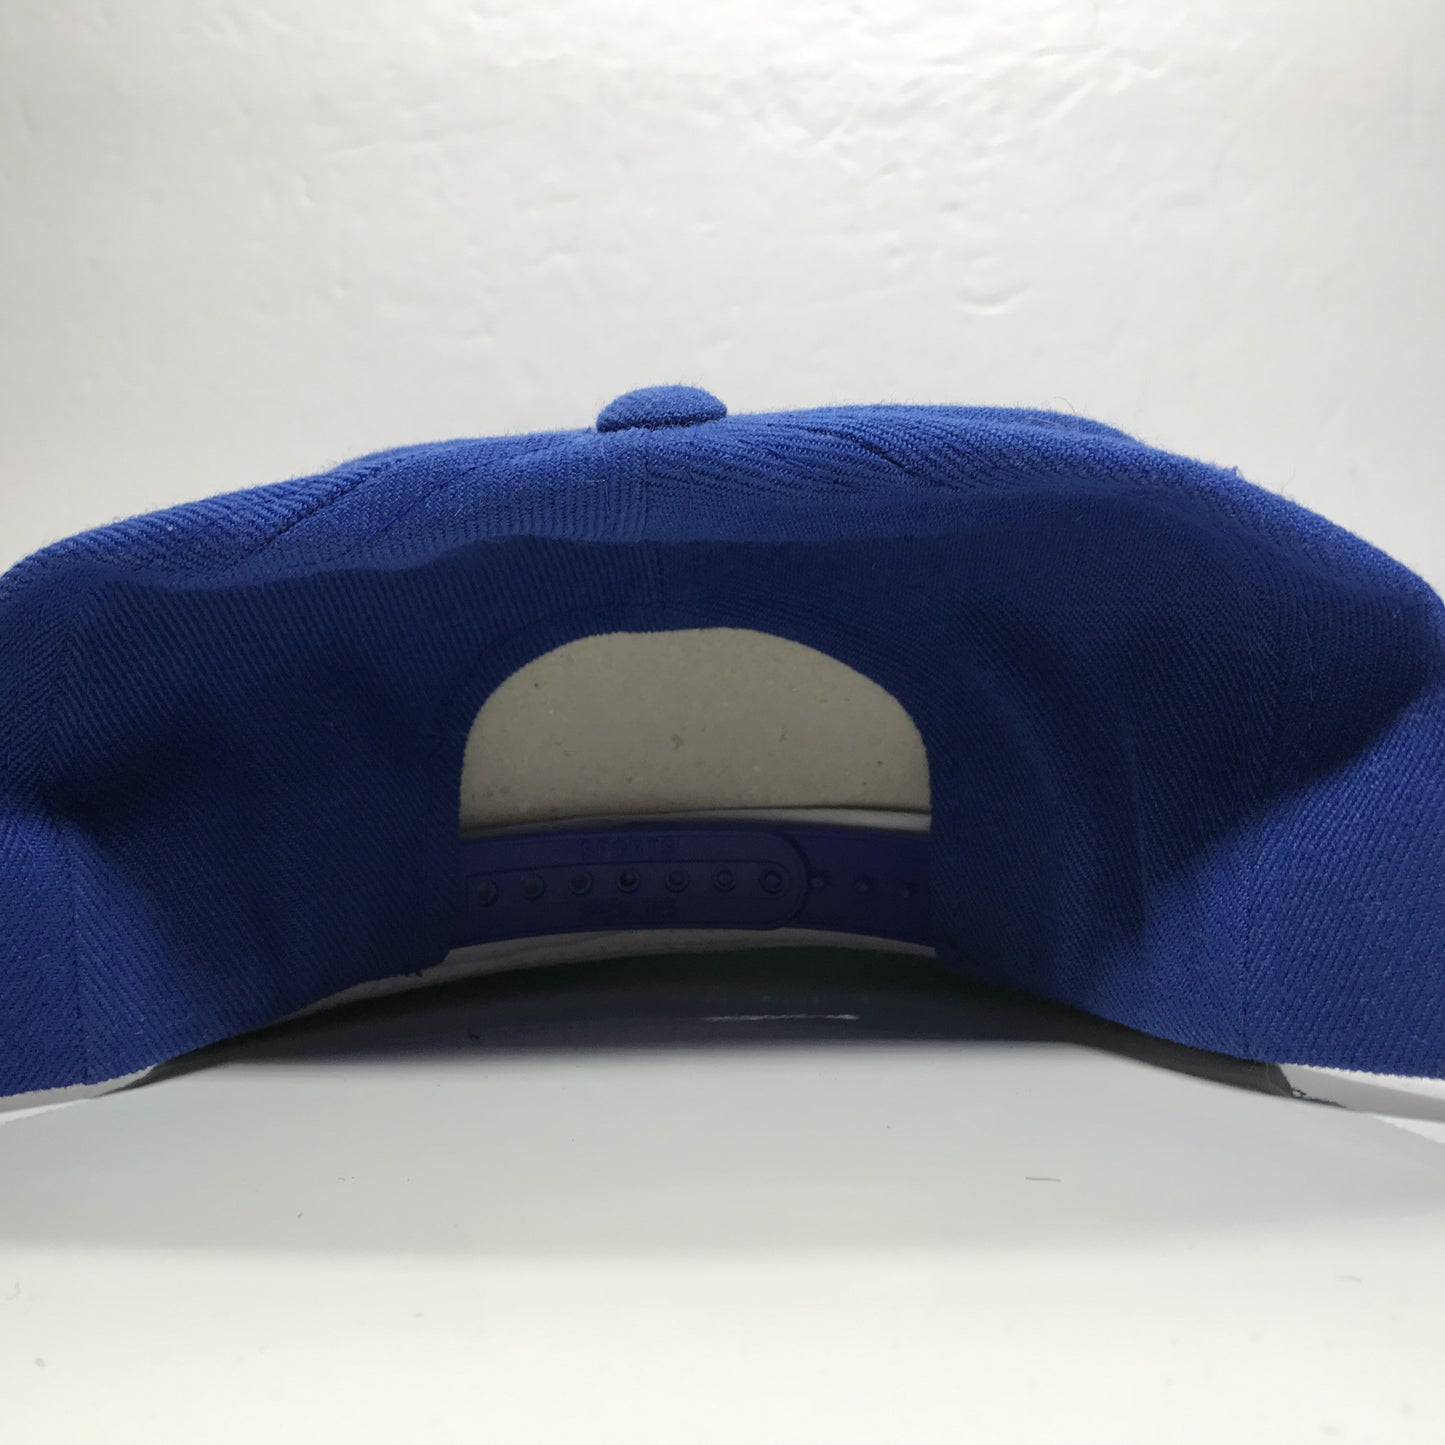 NCAA Kansas Jayhawks KU Football Vintage Snapback Hat Cap